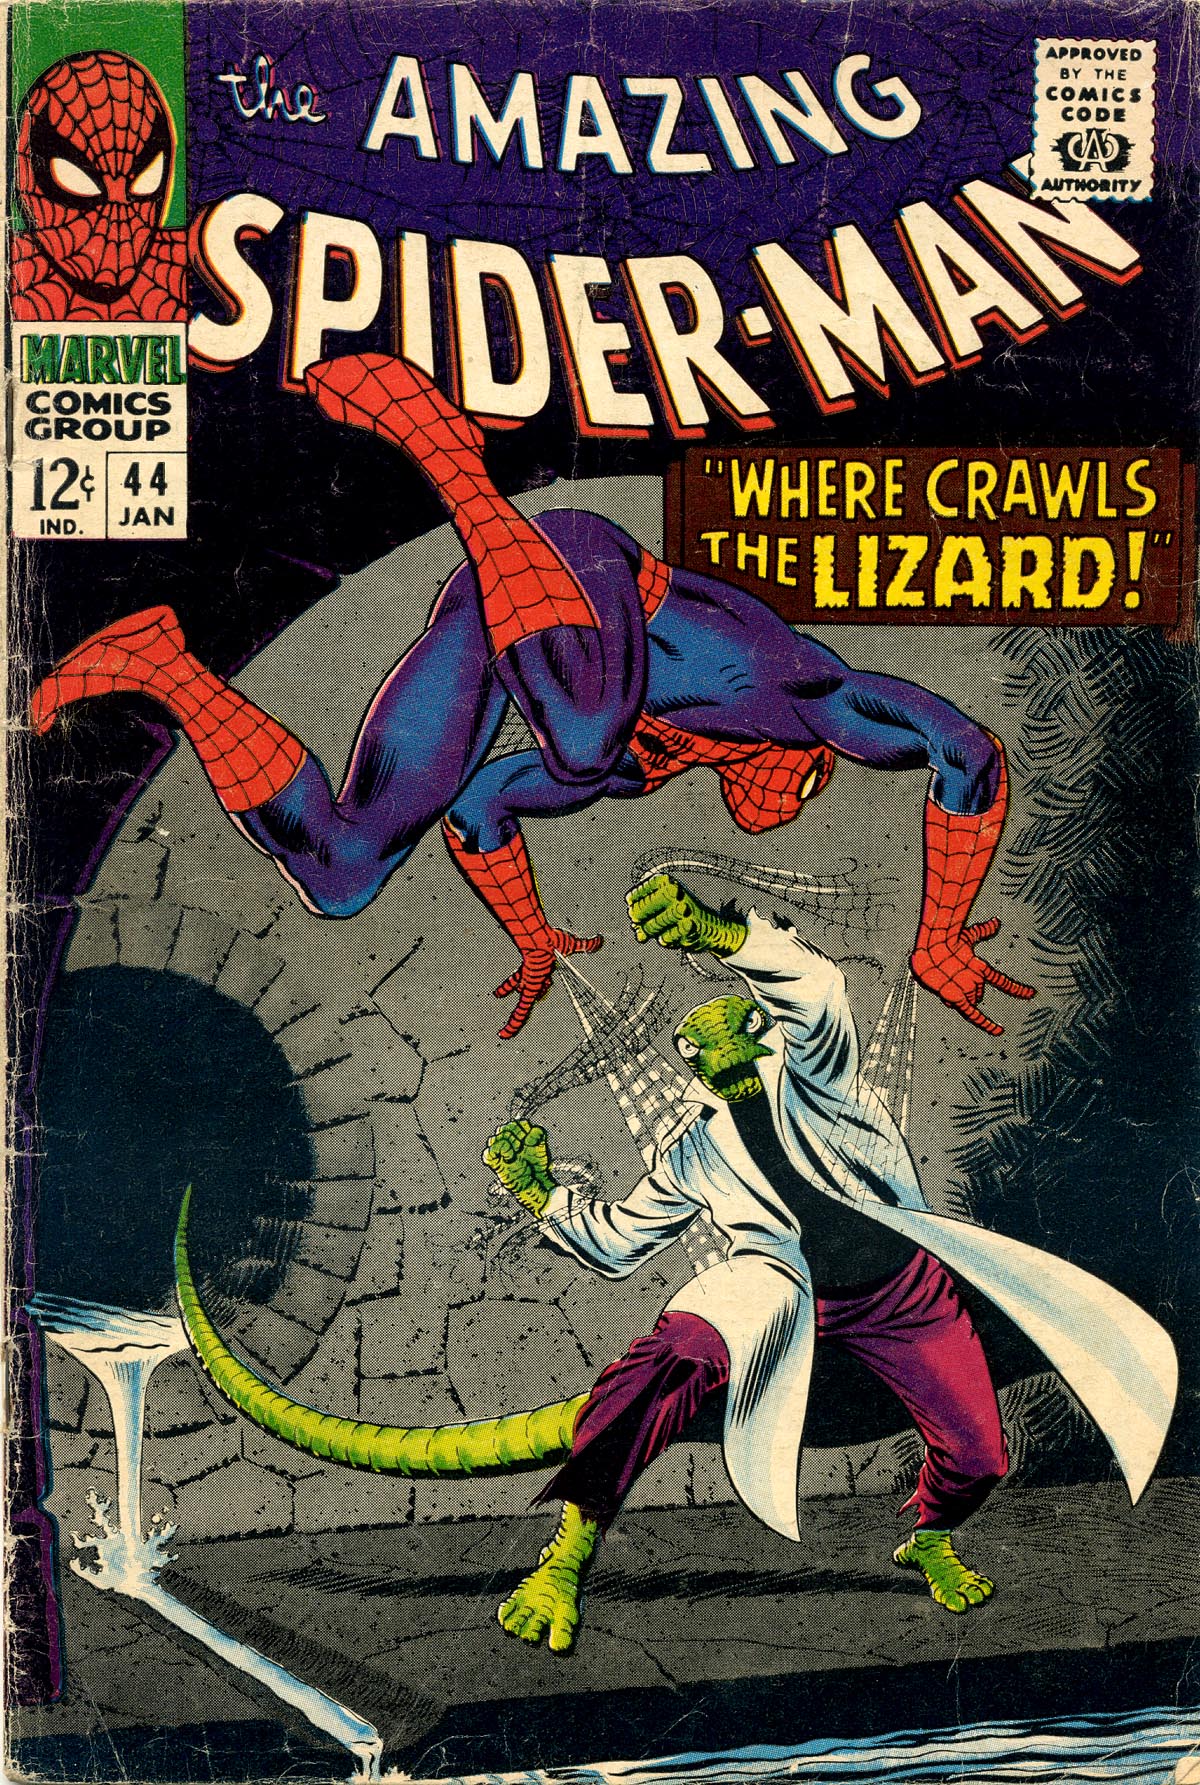 Amazing Spider-Man Vol. 1 #44